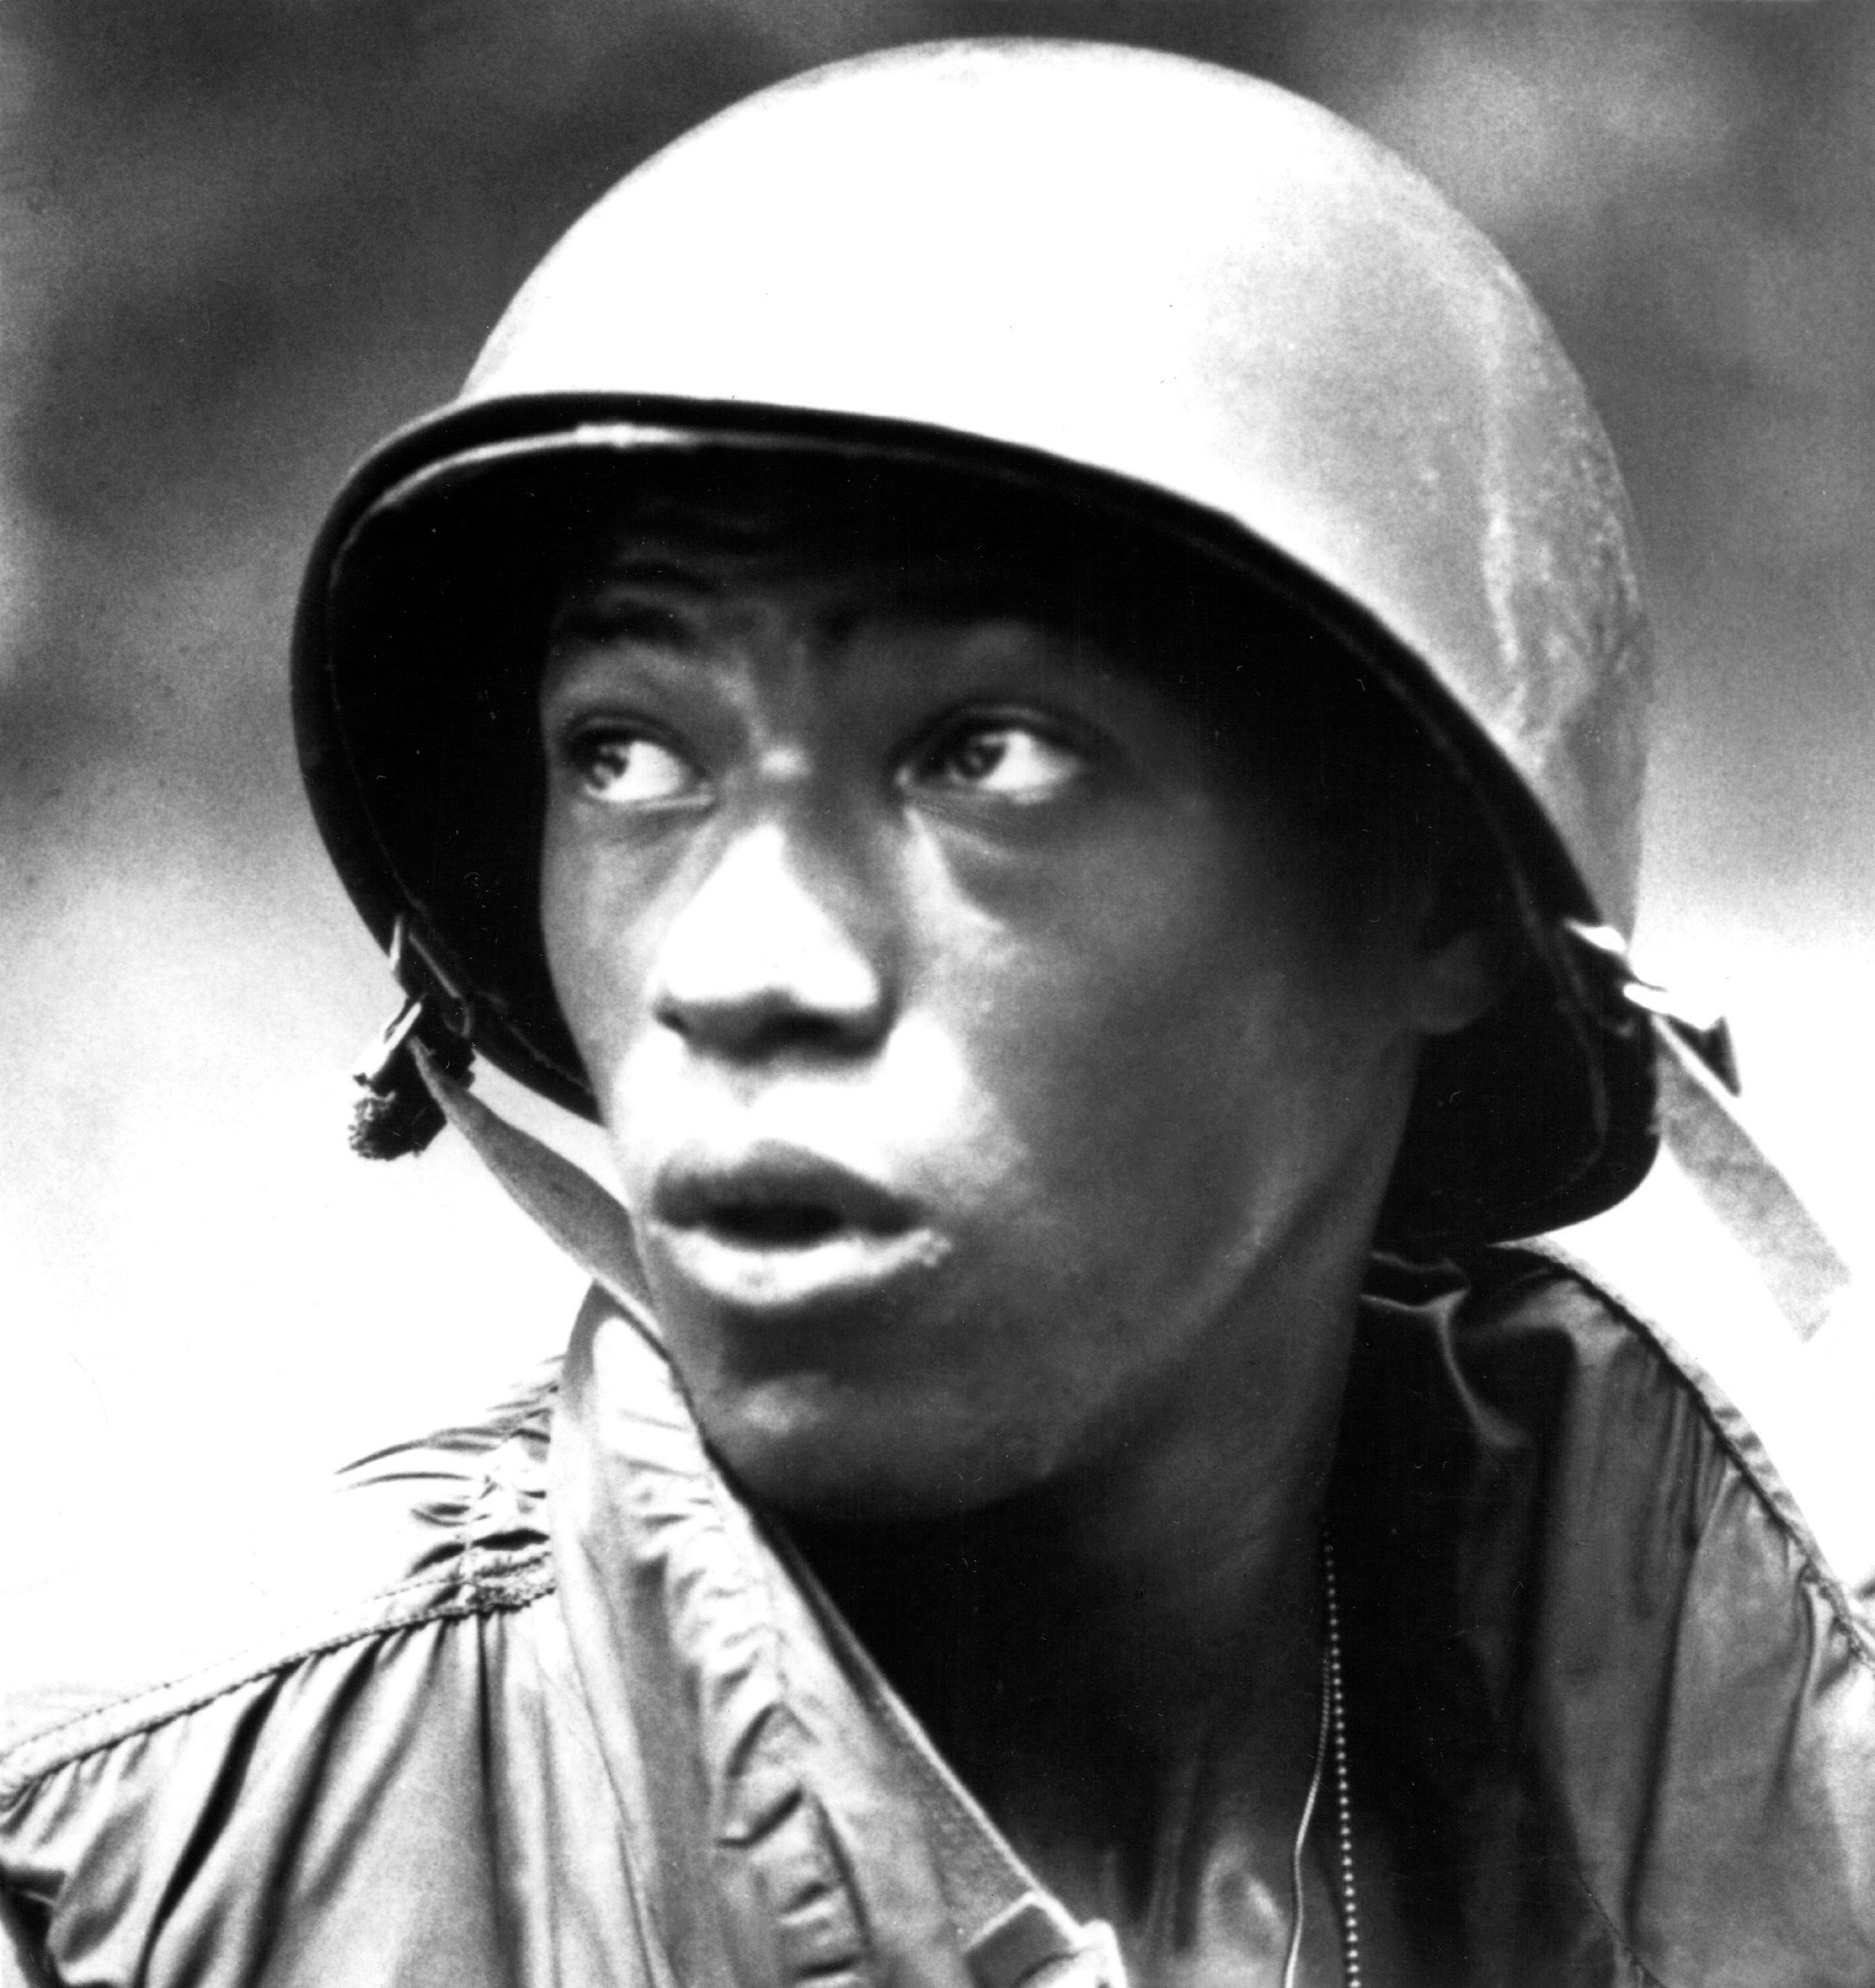 Laurence Fishburne wearing a flak helmet in Apocalypse Now